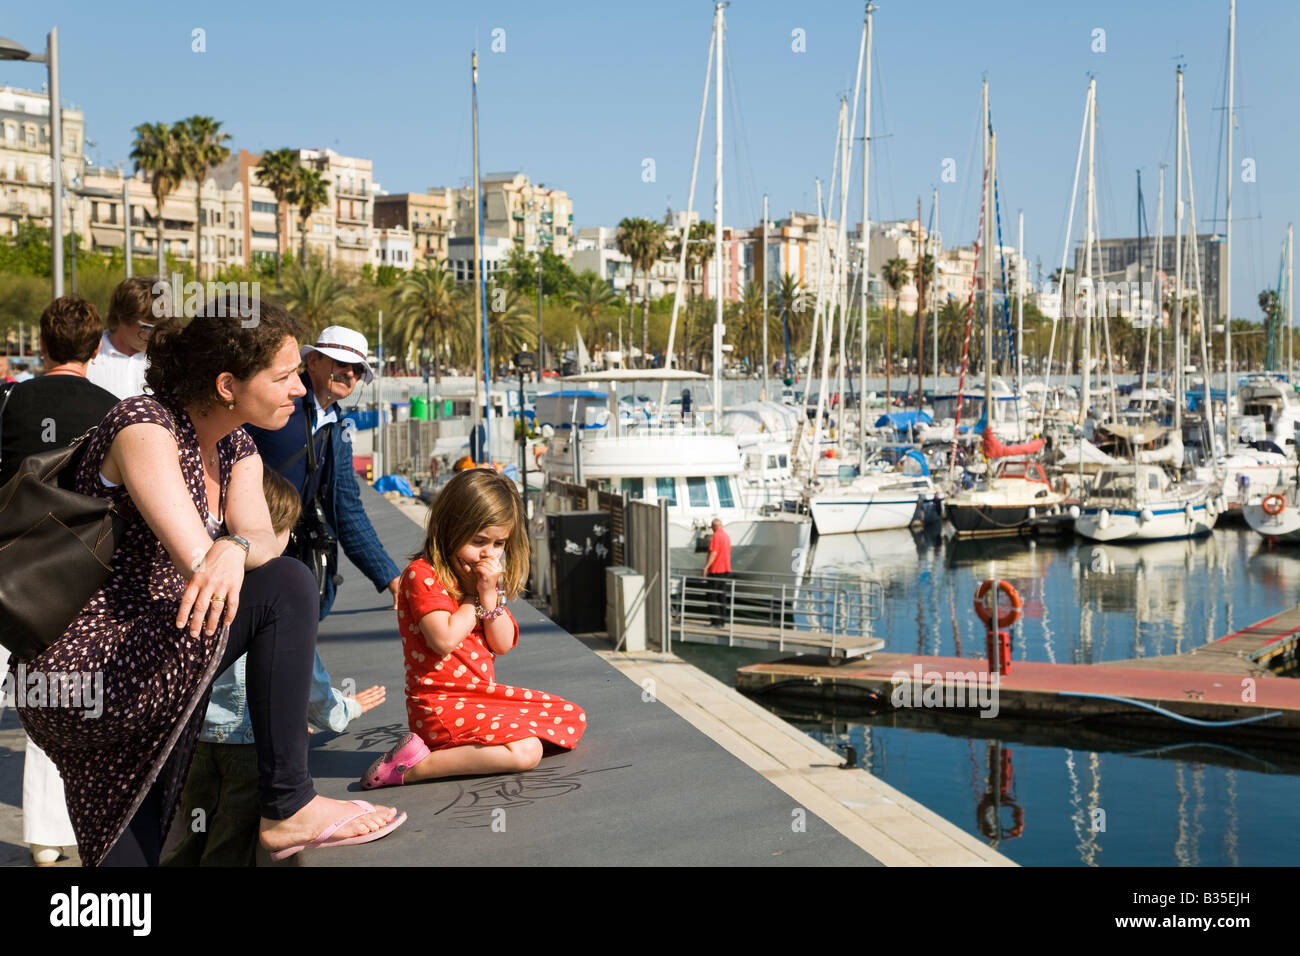 Spanien-Barcelona-Frau und zwei kleinen Kindern anzeigen Hafen Marina Port Vell Mädchen sitzen auf Betonwand mit Blick auf Segelboote Stockfoto